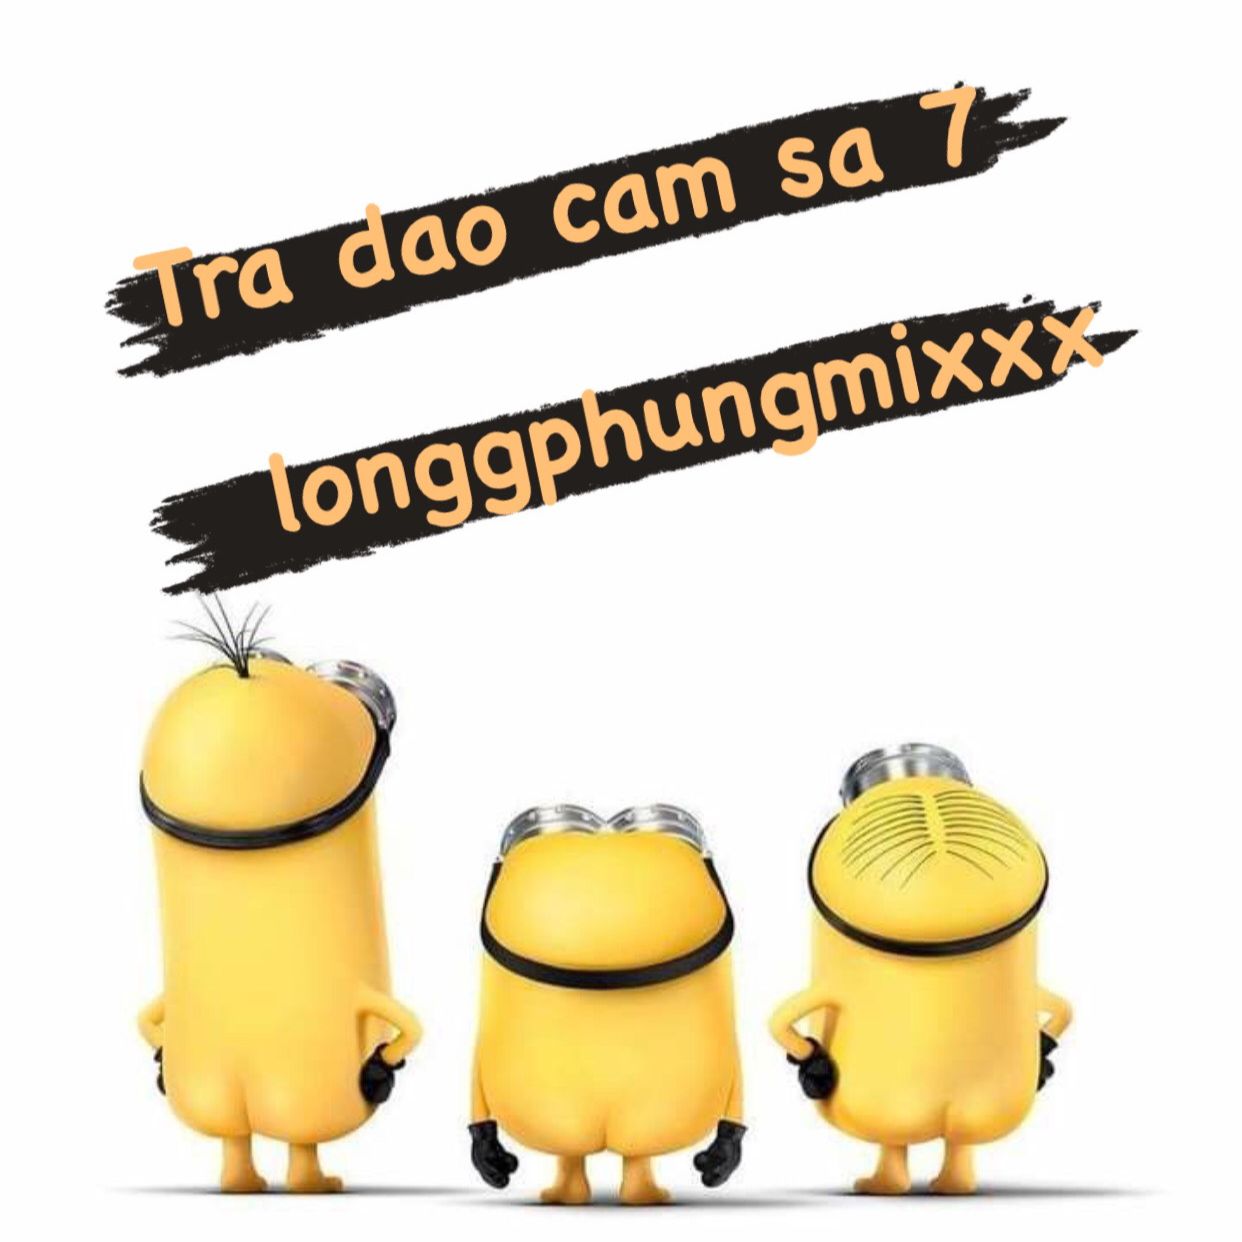 ဒေါင်းလုပ် Tra Dao Cam Sa 7 - 132 longgphungmixxx